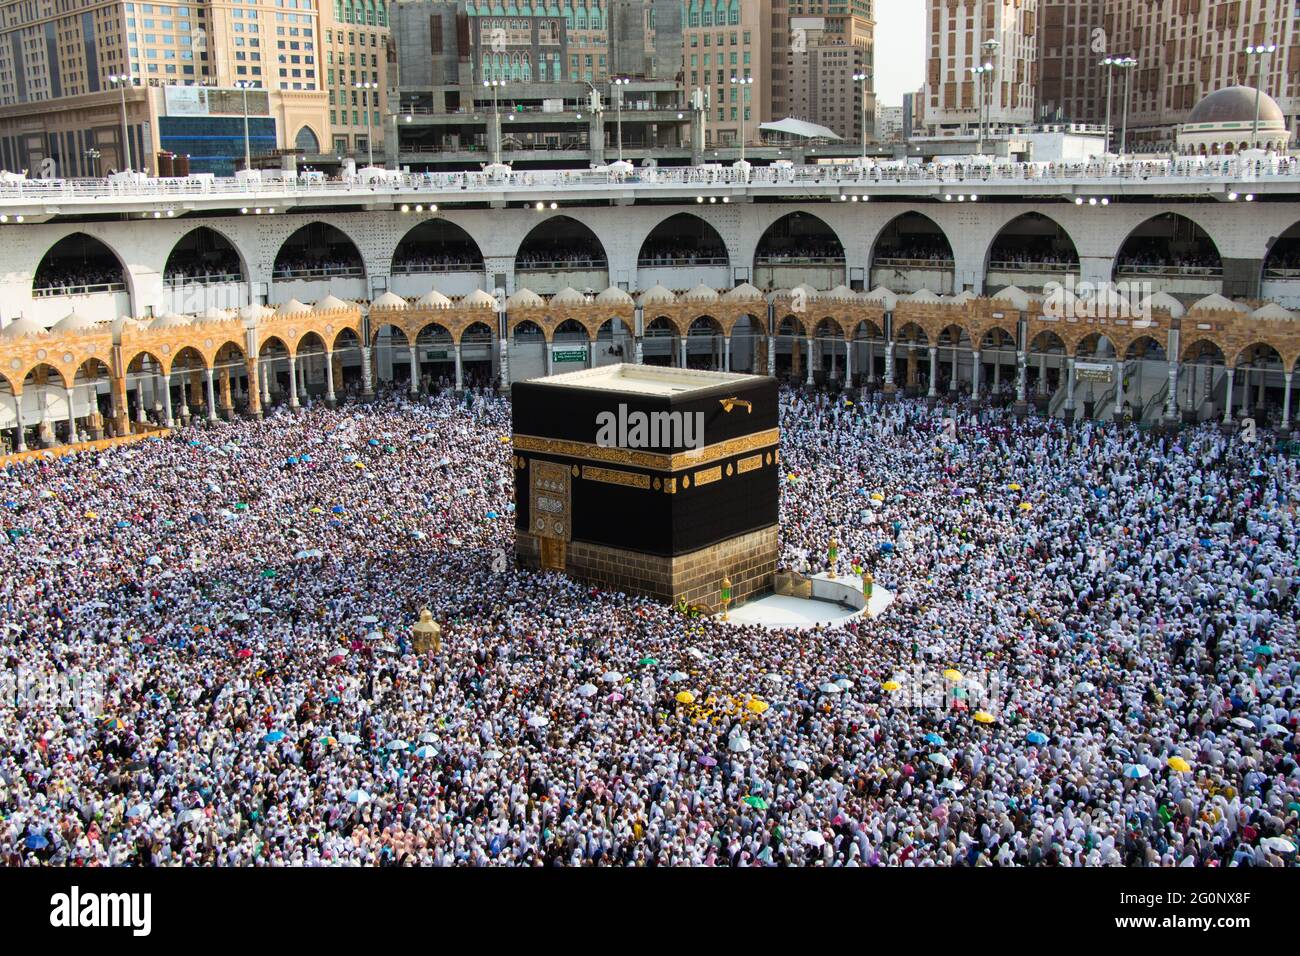 Heilige Kaaba. Menschenmenge, die immer um Kaaba herumläuft. Ritual der Umkreisung - Tawaf während der Pilgerfahrt. Mekka - Saudi-Arabien Stockfoto